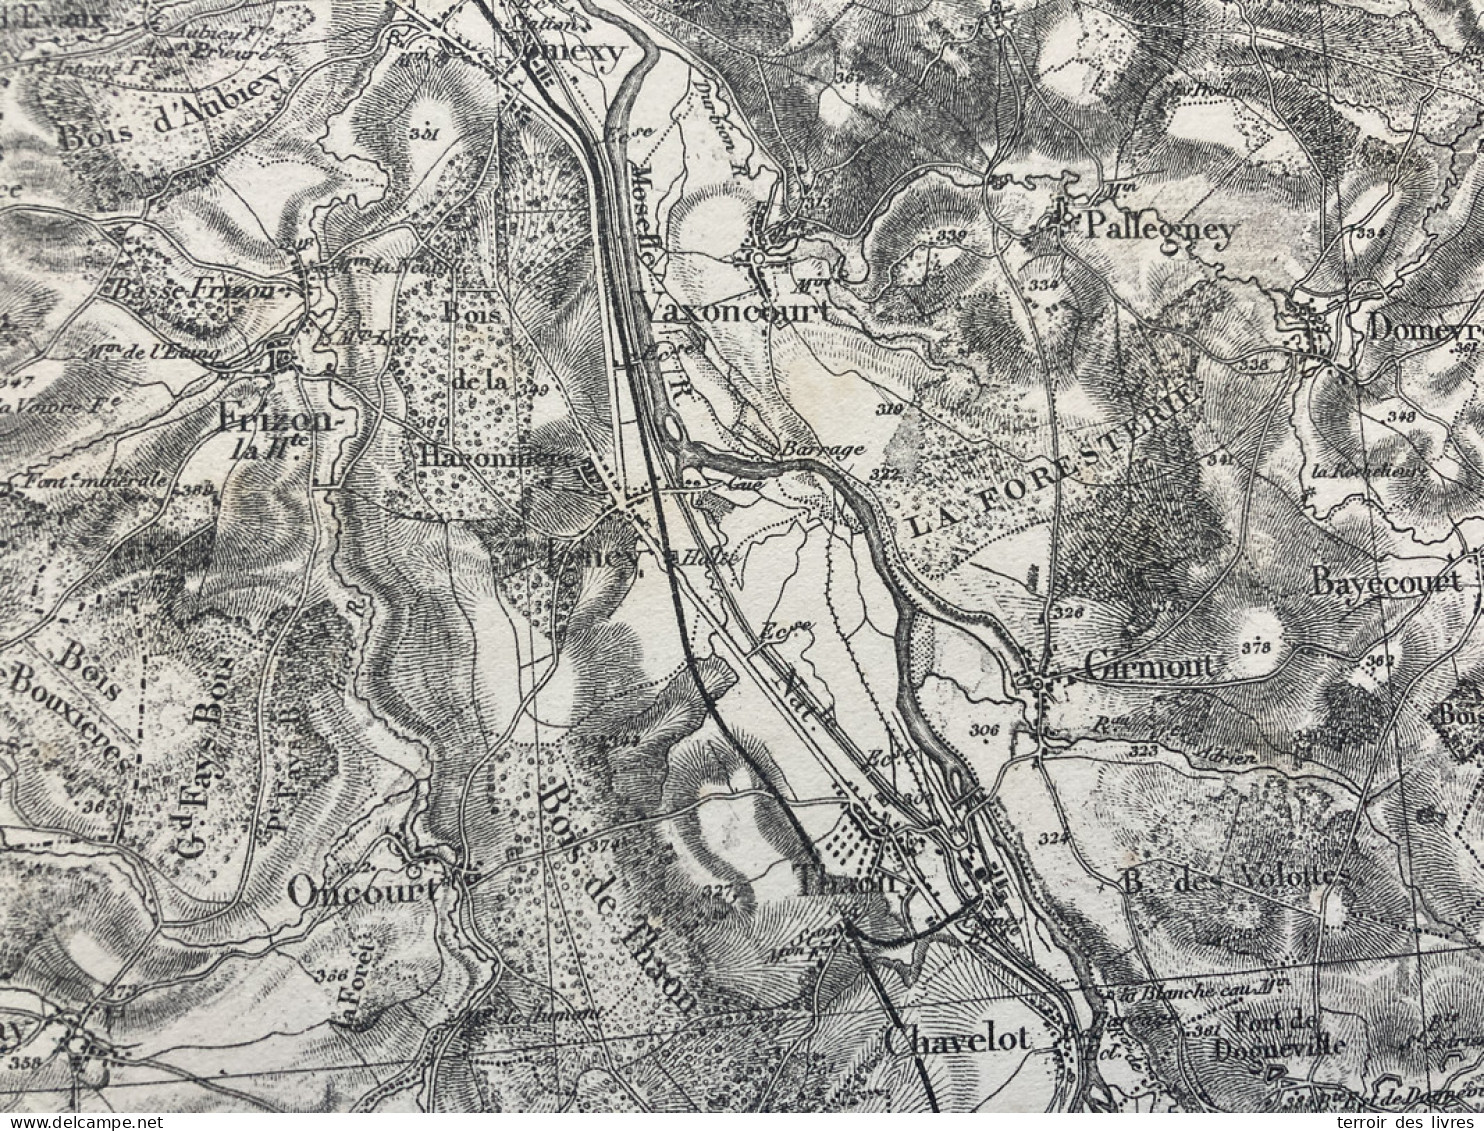 Carte état Major EPINAL 1888 33x50cm GIRMONT THAON-LES-VOSGES CHAVELOT IGNEY DOMEVRE-SUR-DURBION PALLEGNEY BAYECOURT ONC - Cartes Géographiques